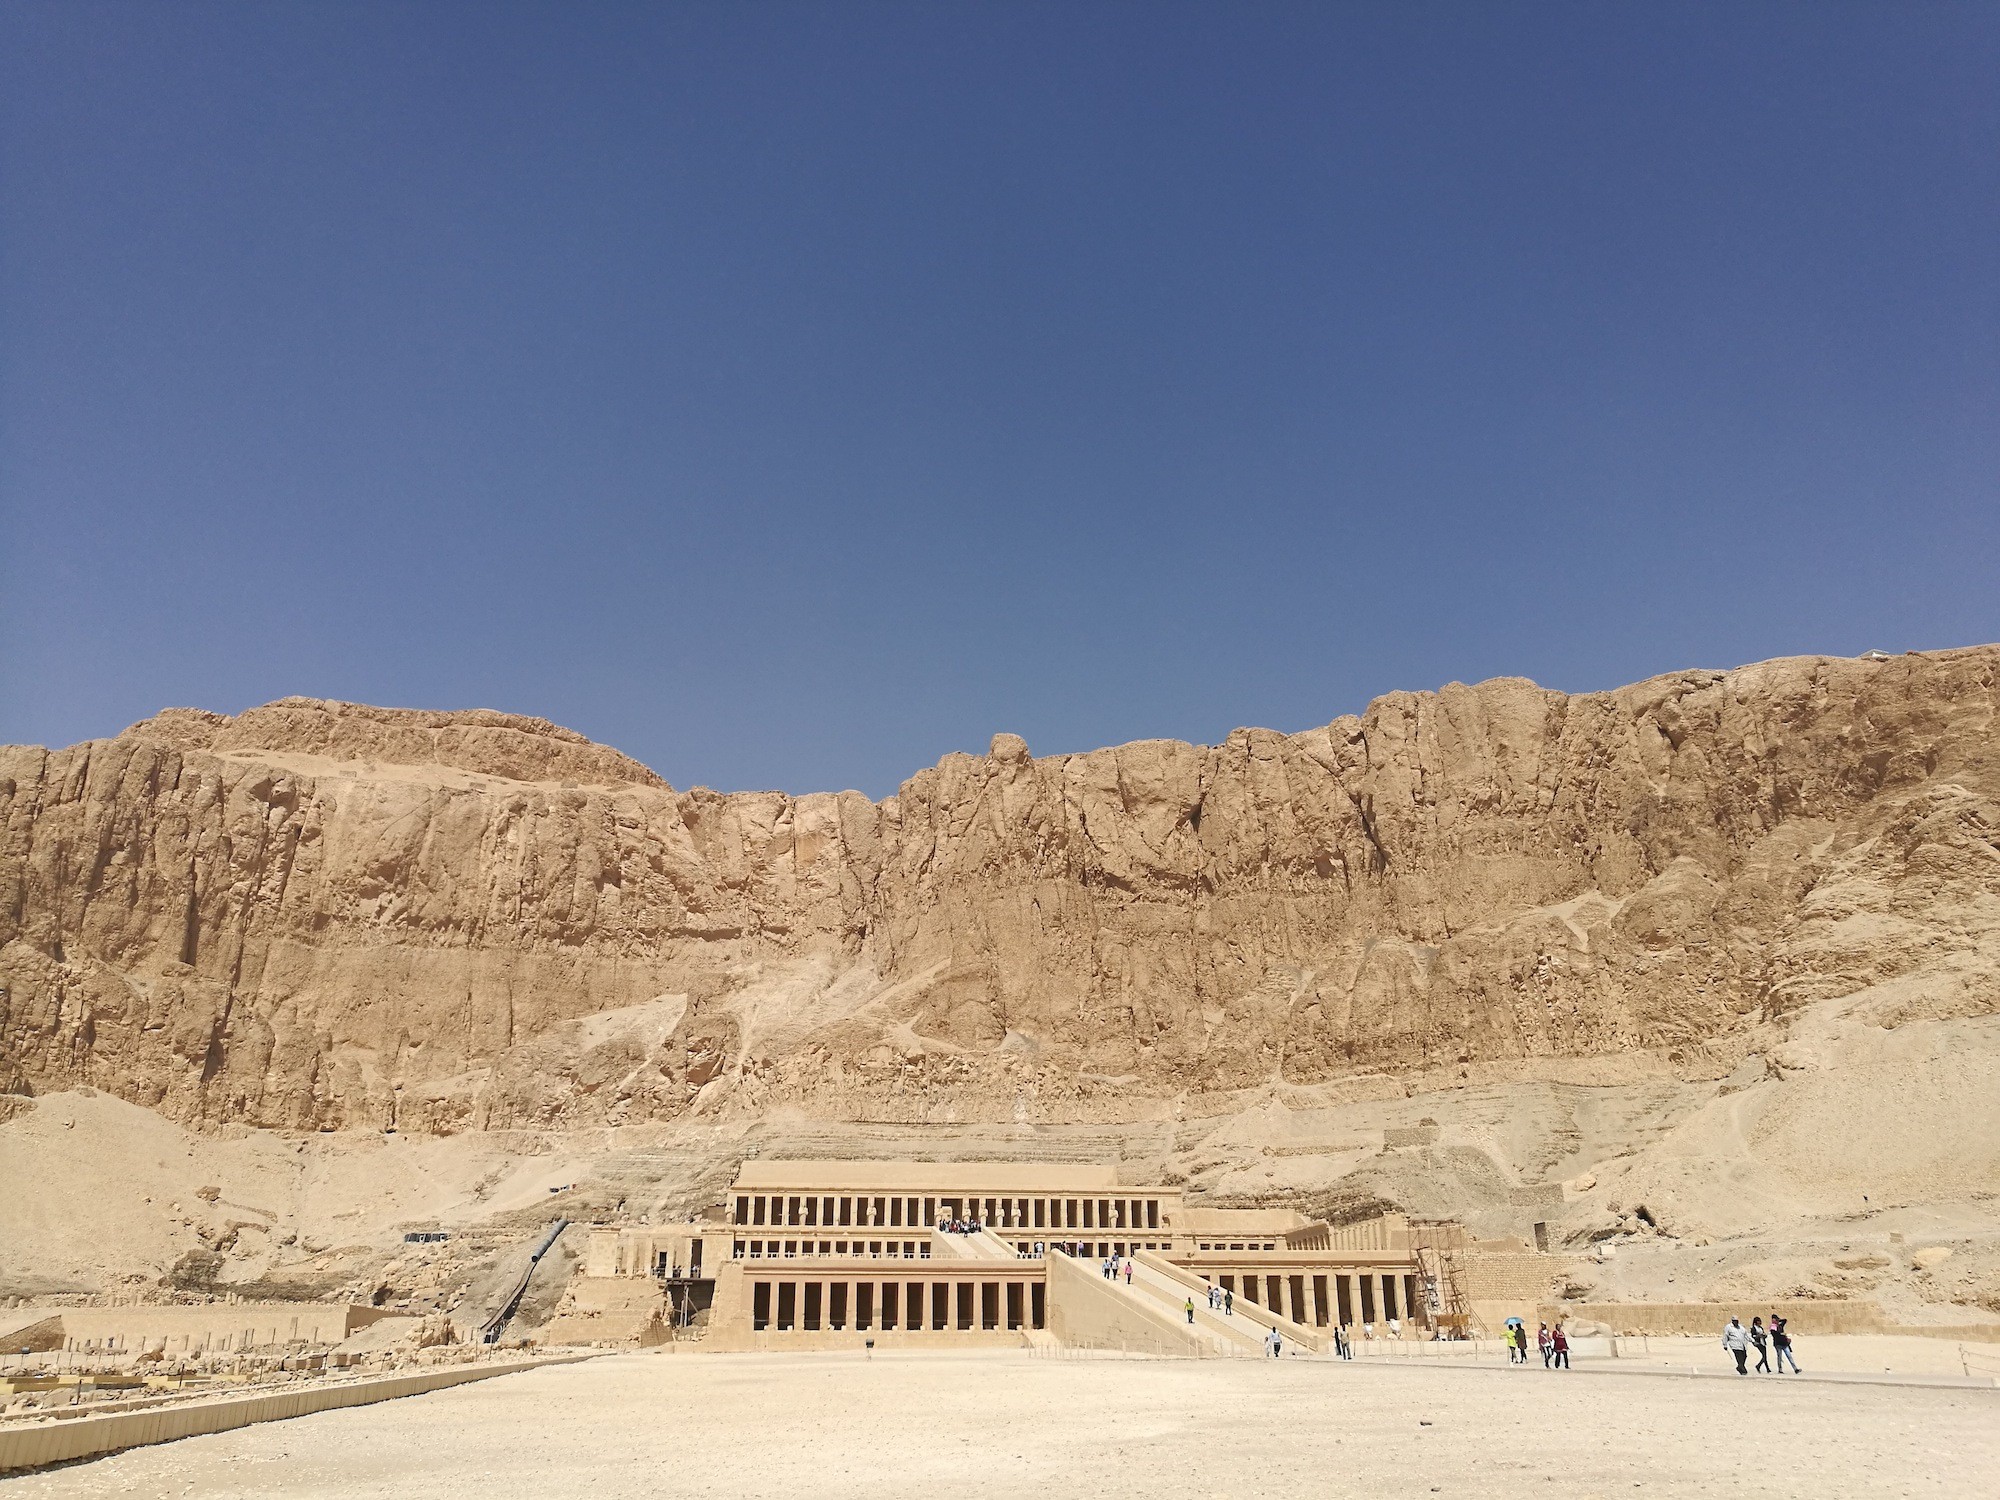 Hatshepsut Temple和Valley of the Kings差不多是背对背地靠在这座山上，只可惜埃及政府不允许爬过这座山，不然可以省去从外围绕路的麻烦了。